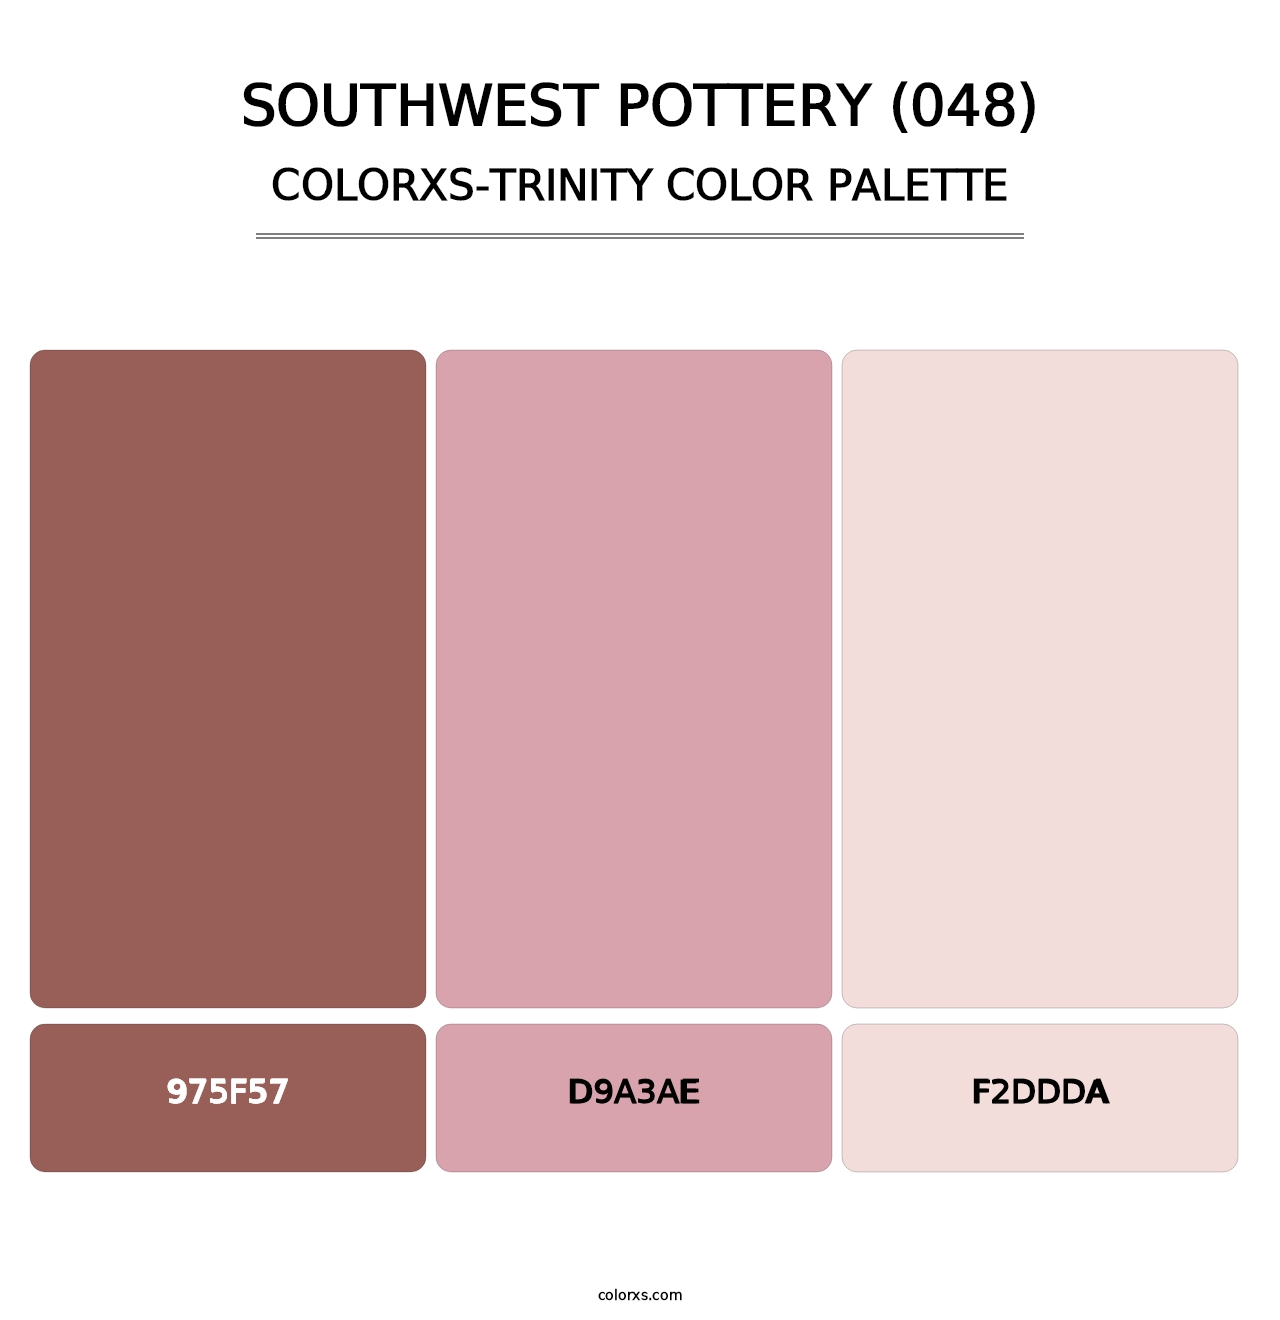 Southwest Pottery (048) - Colorxs Trinity Palette